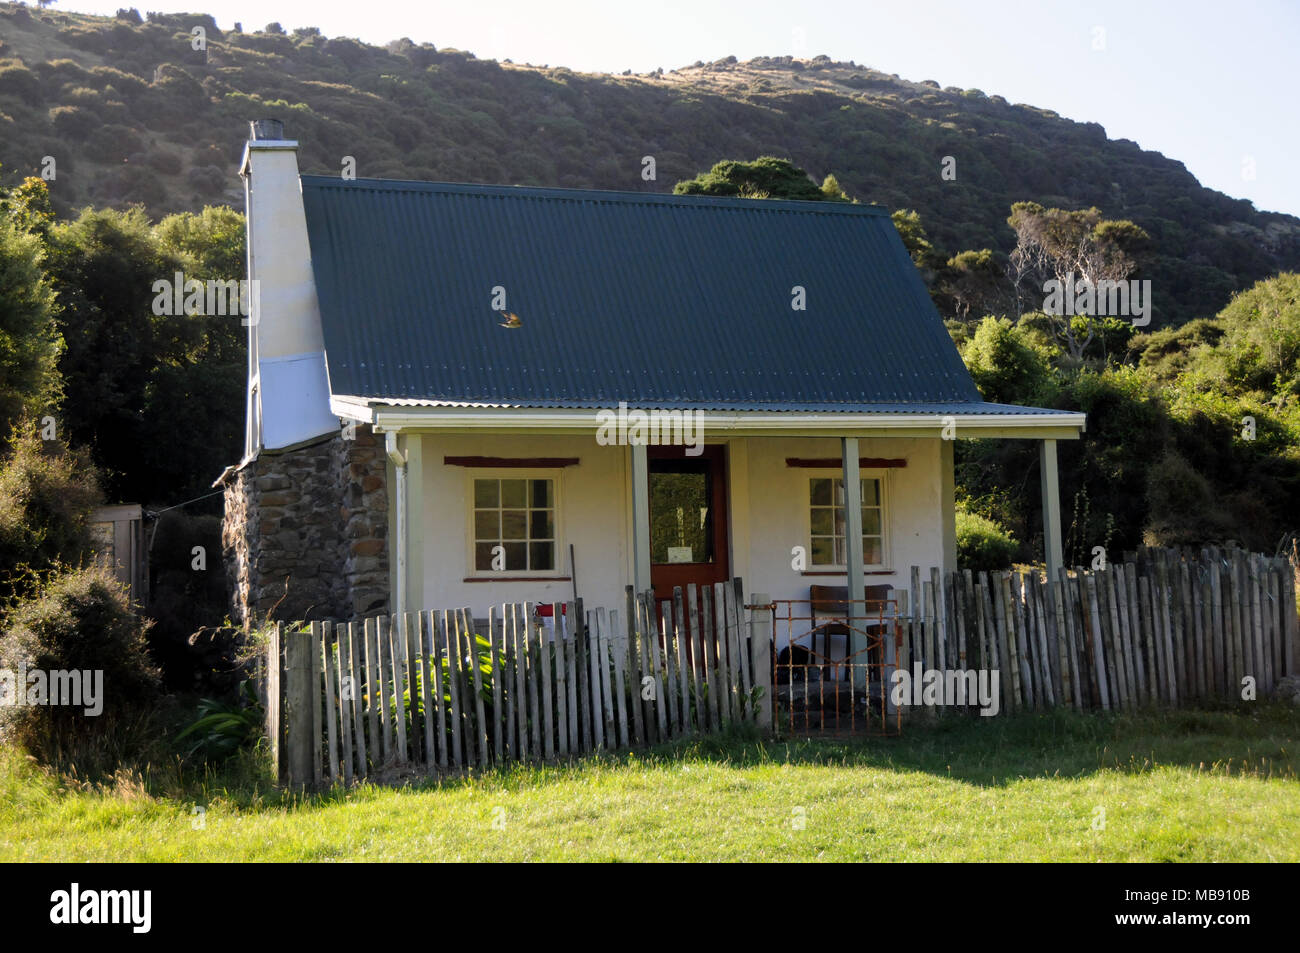 Lo storico cottage nella baia delle pulci Akaroa Nuova Zelanda era l'originale homesteaders cottage quando la baia è stata prima coltivata. Foto Stock